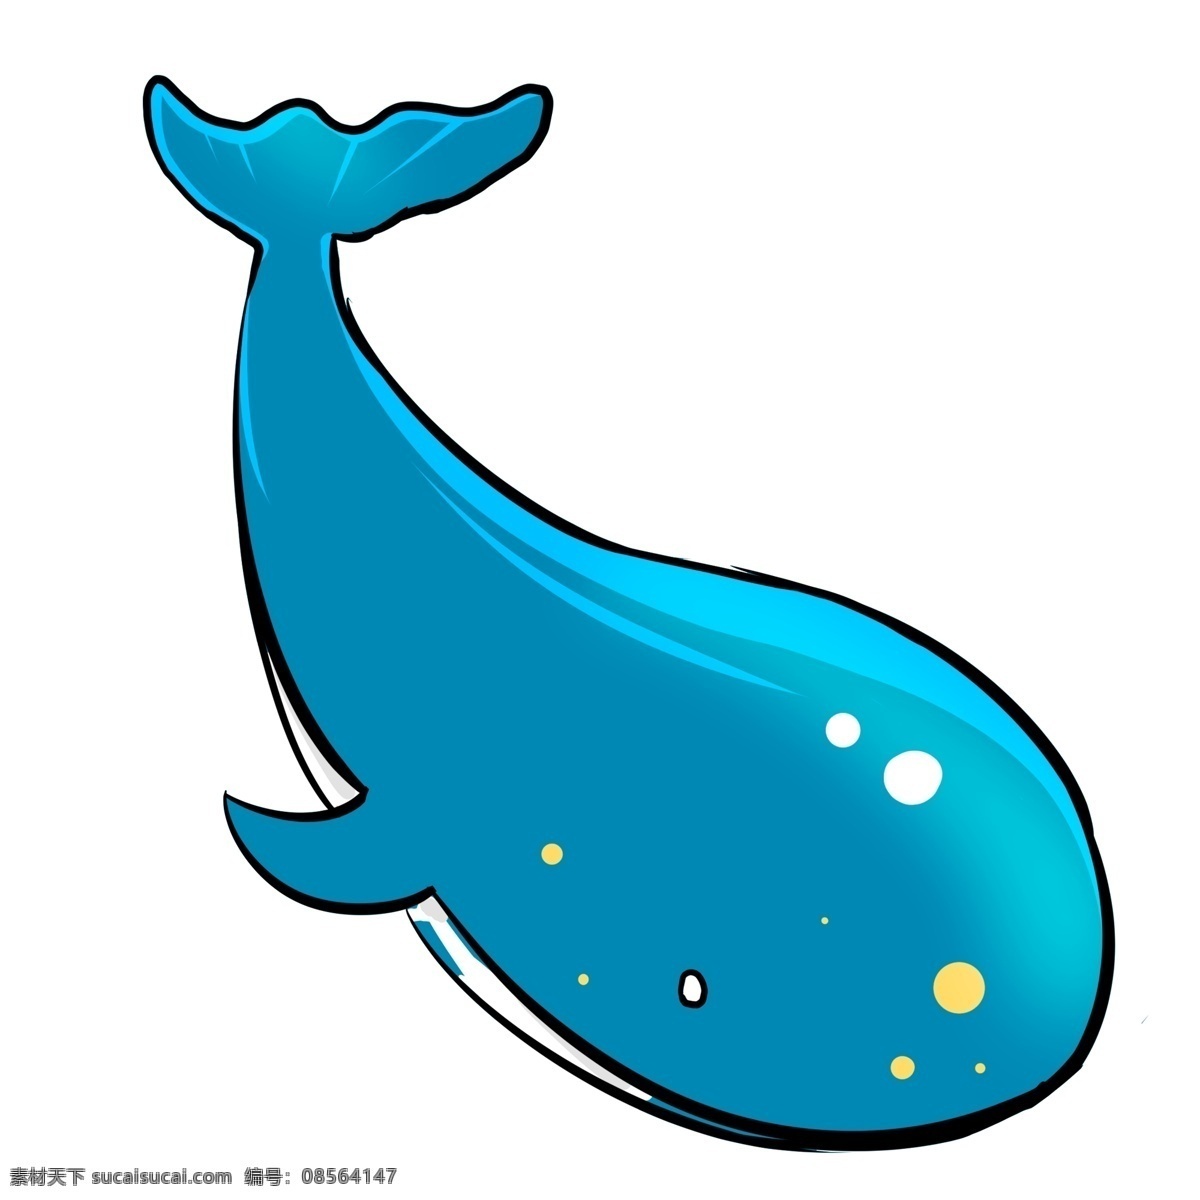 卡通 可爱 鲸鱼 动物 蓝色 插画 创意 q版 萌宠 宠物